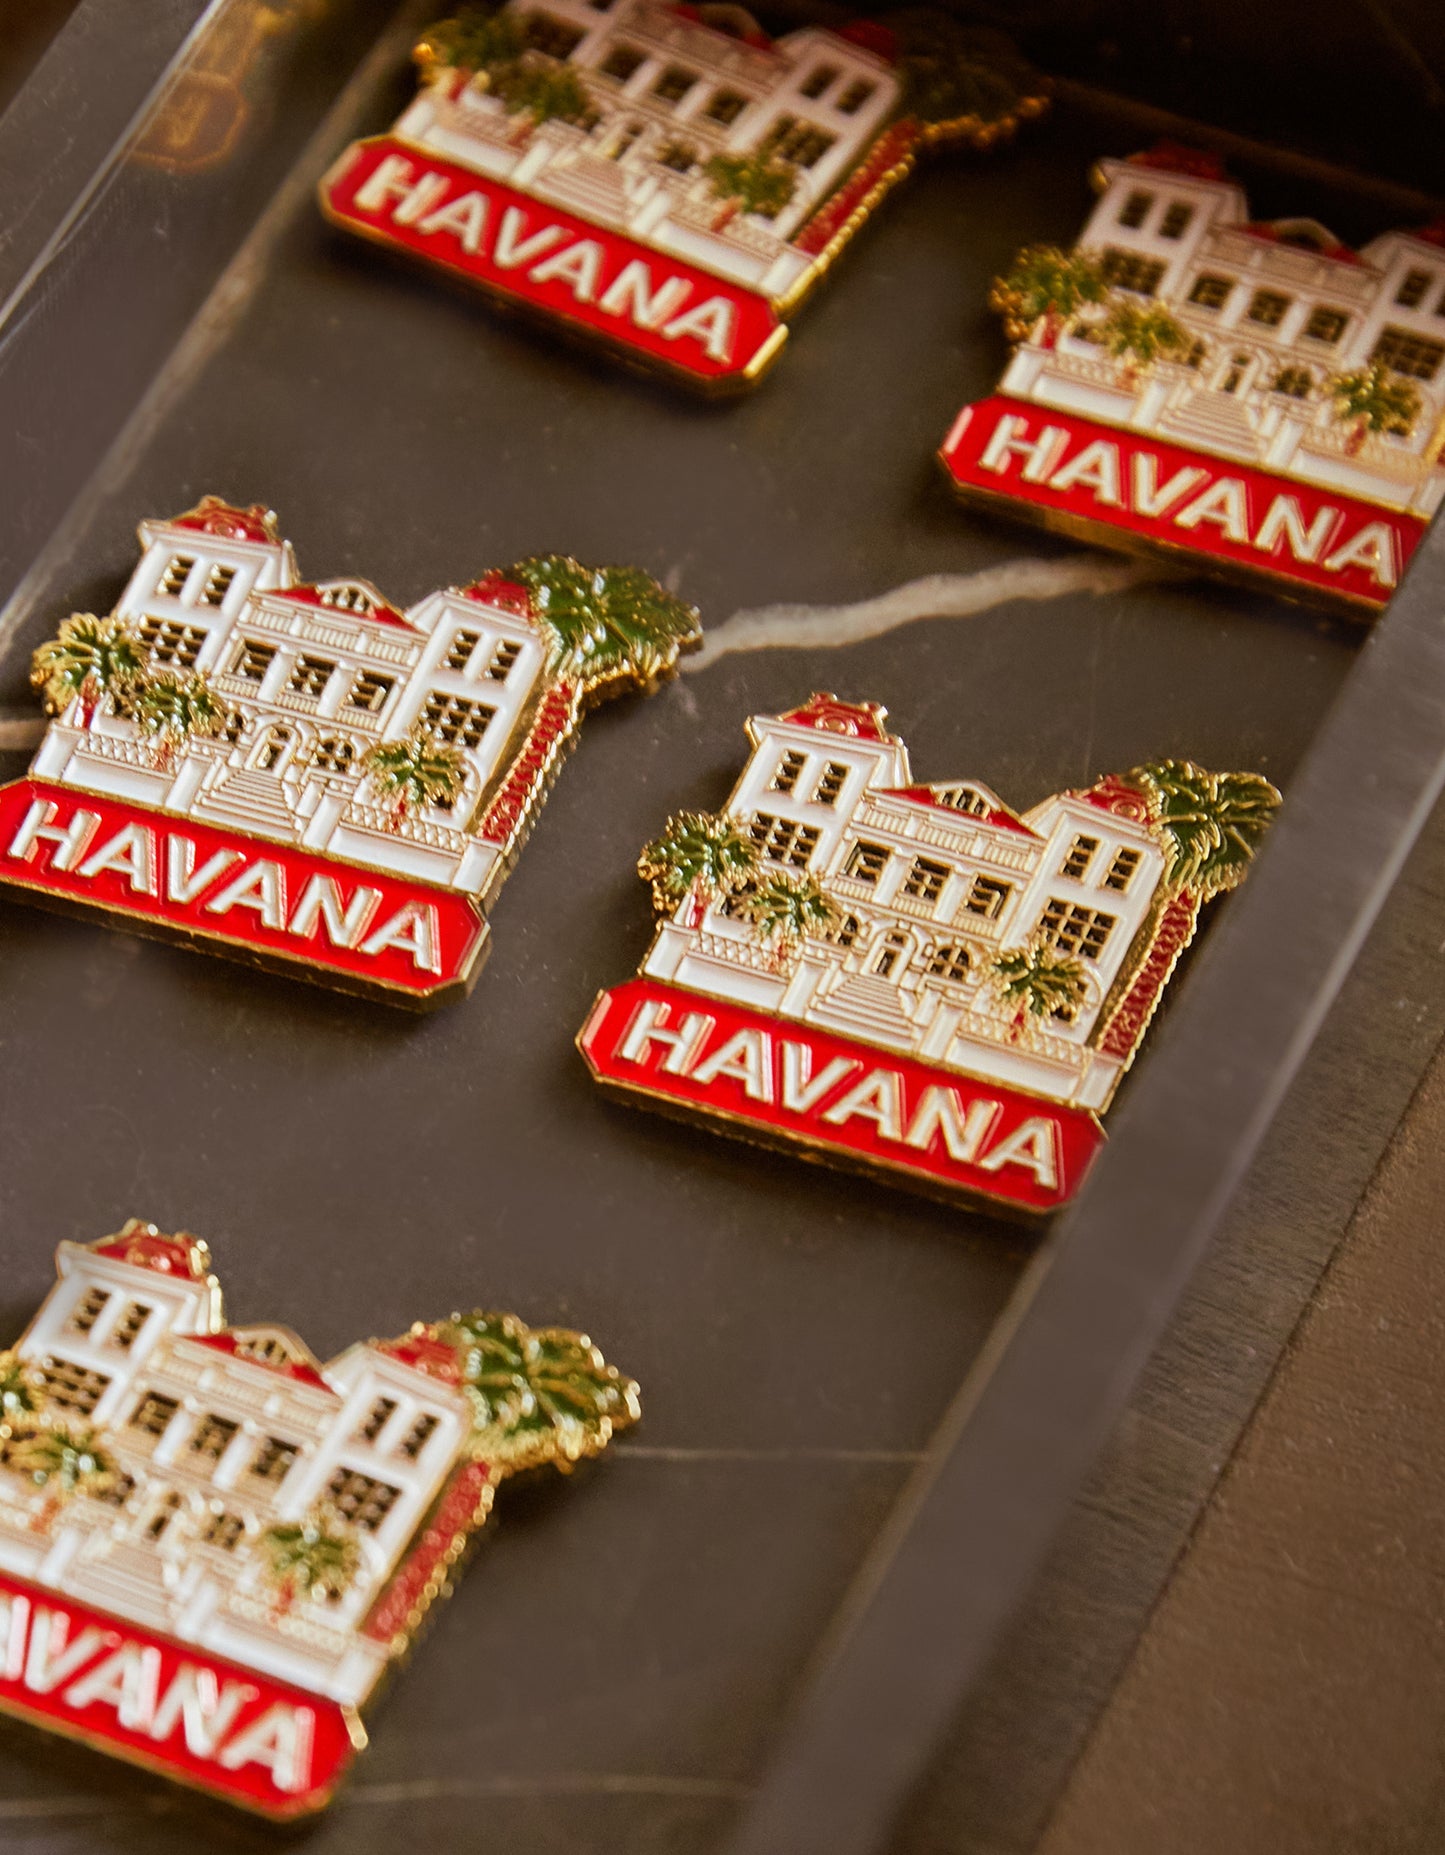 Hotel Havana Enamel Pin